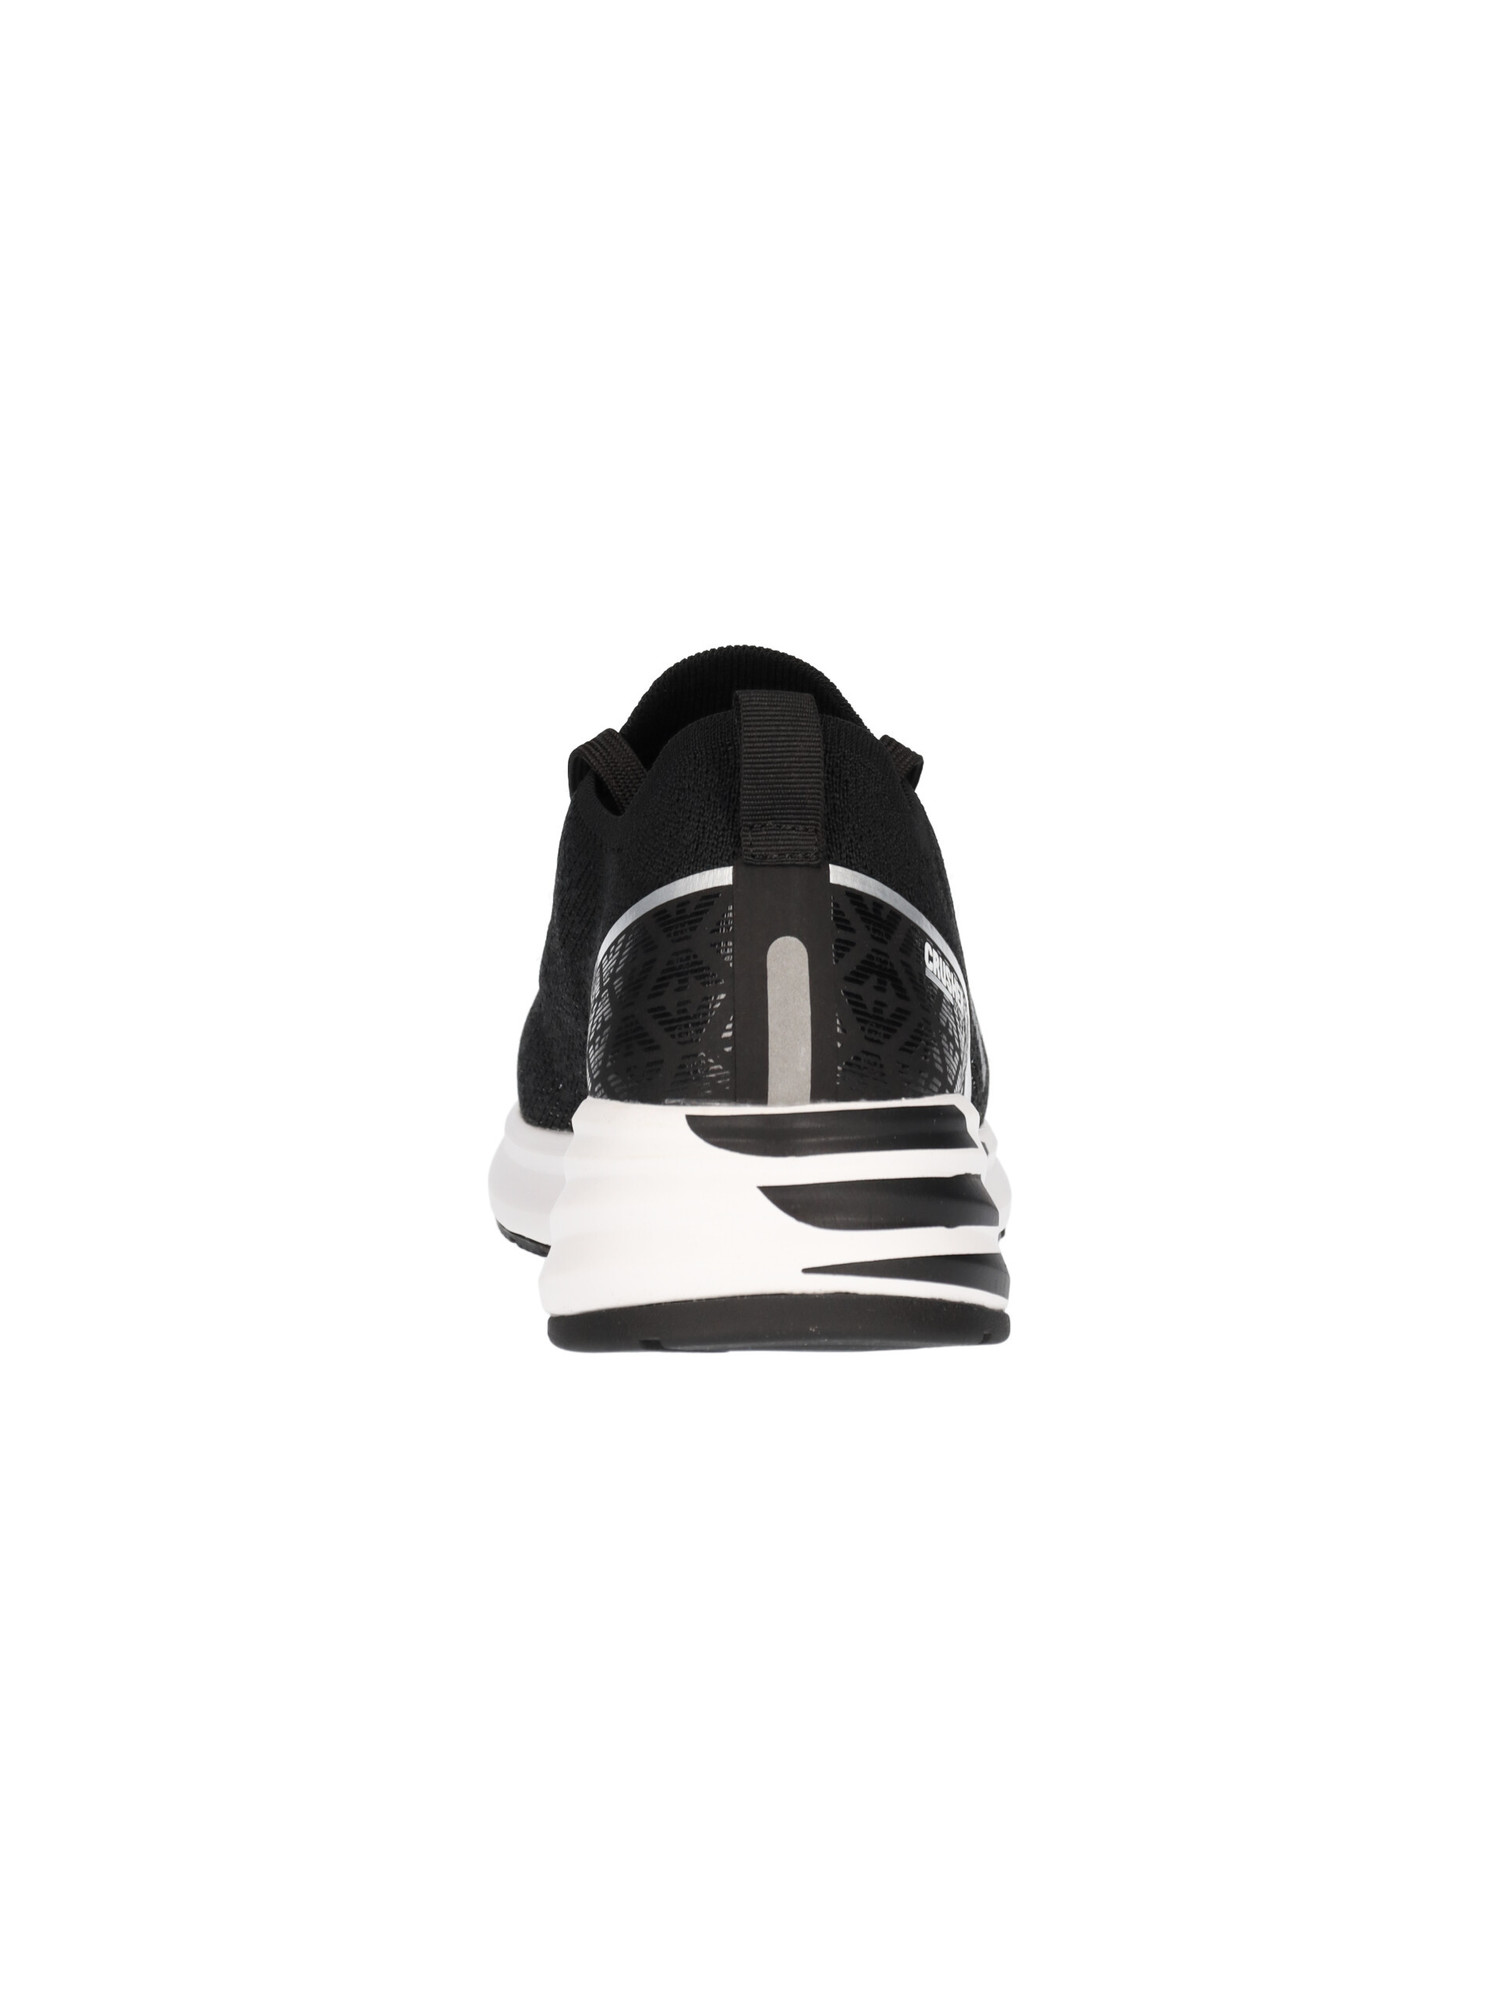 sneaker-emporio-armani-da-uomo-nera-3b3490